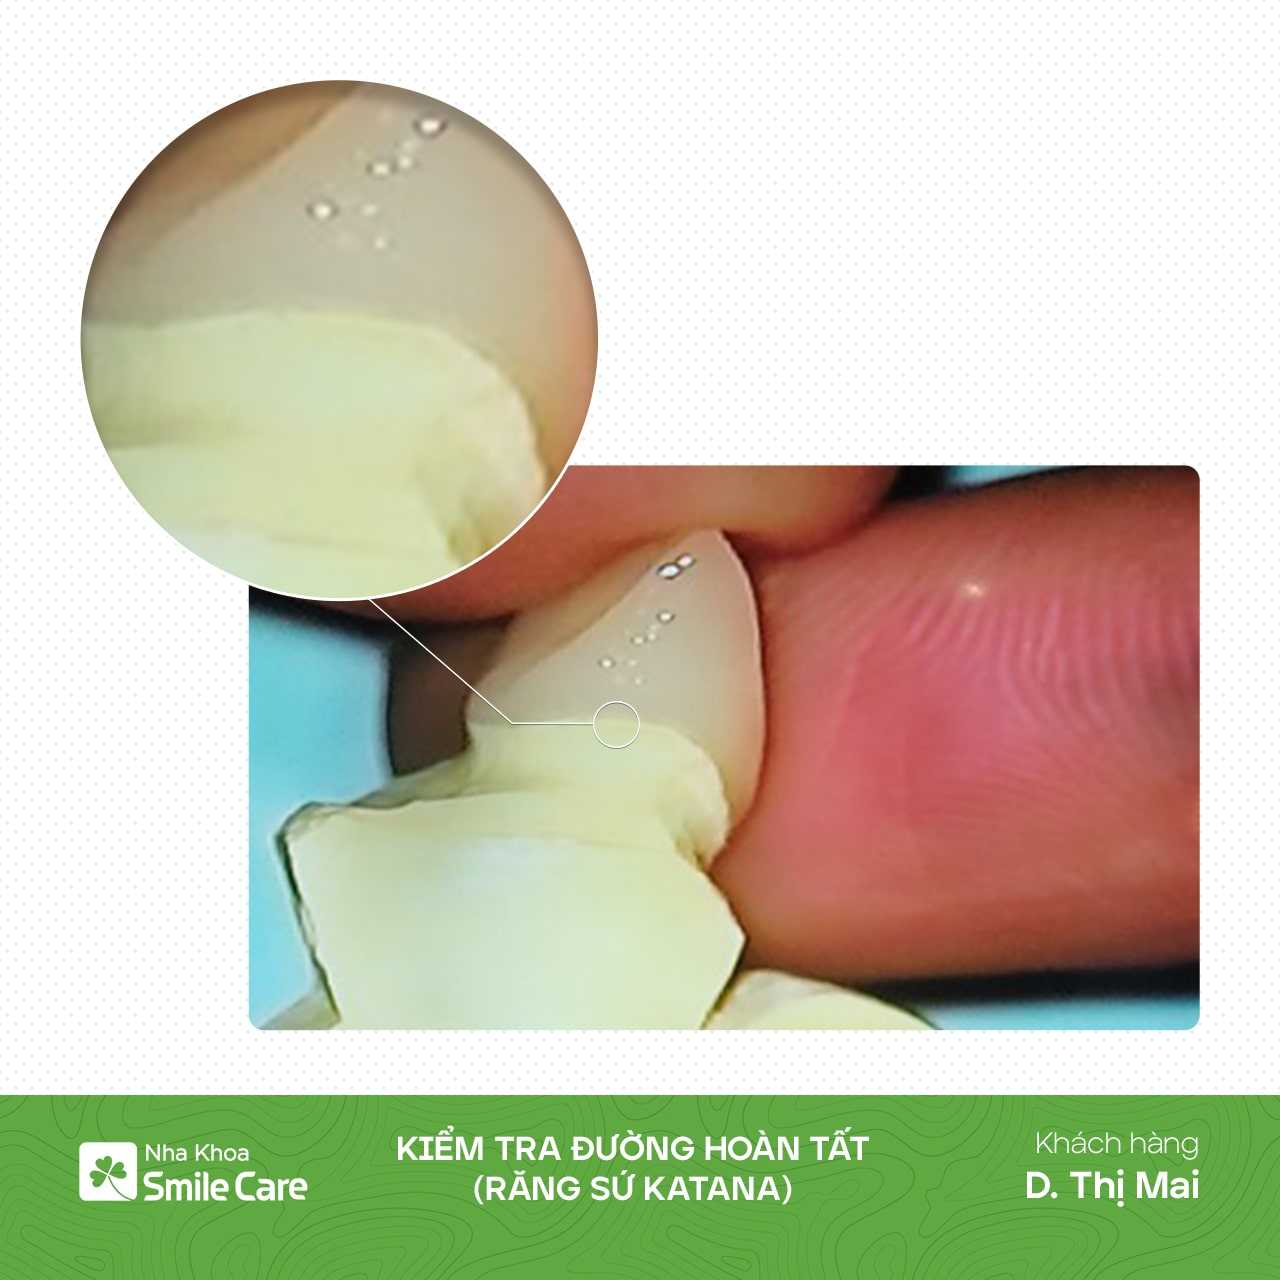 Kiểm tra đường hoàn tất 16 răng sứ Katana - D. Thị Mai